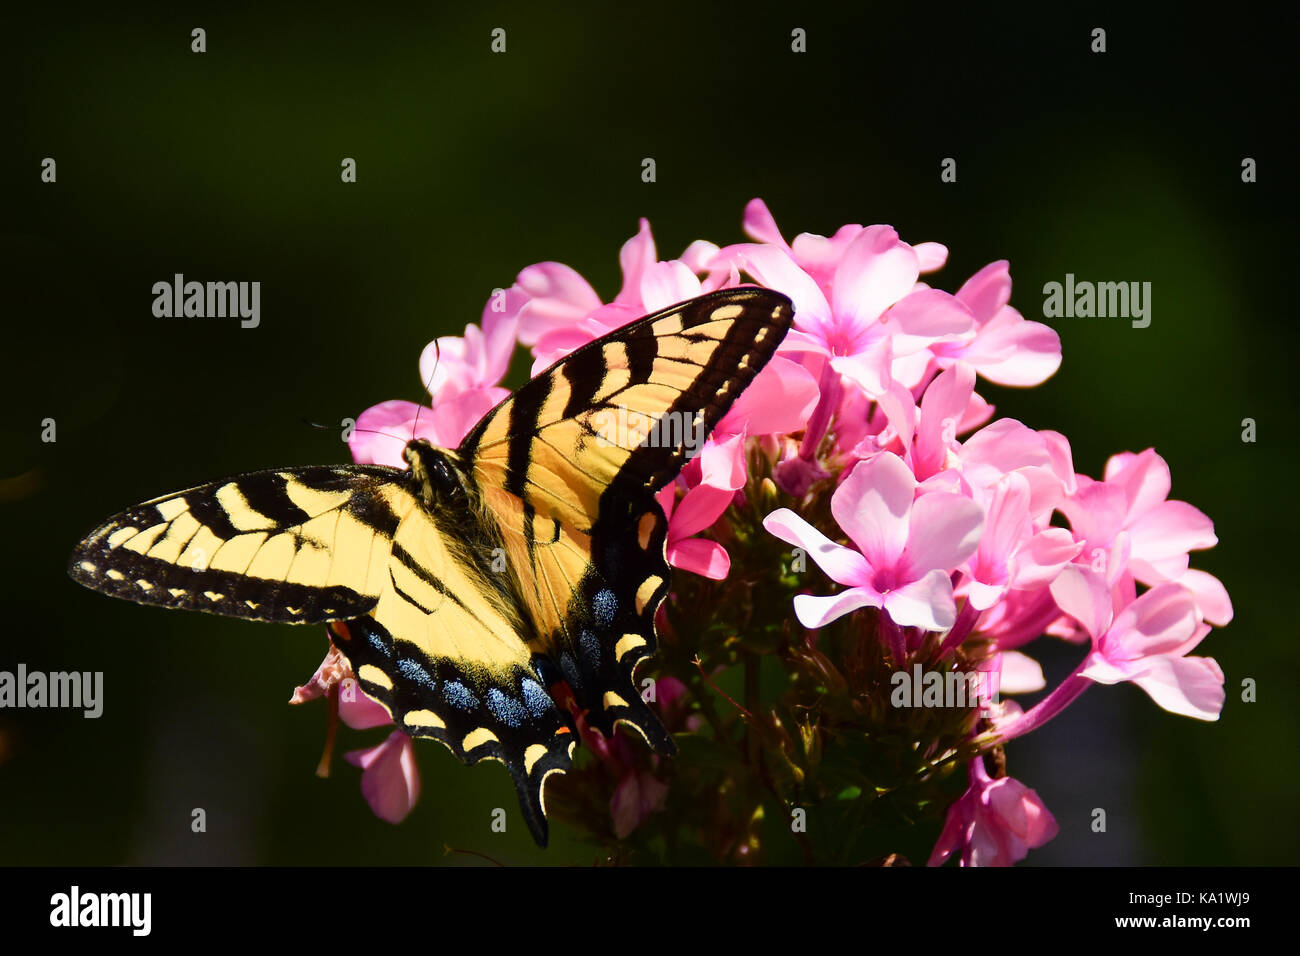 Eastern tiger swallowtail Butterfly (Papilio glaucus) se nourrissant de phlox rose dans le jardin avec une ombre sombre arrière-plan. Banque D'Images